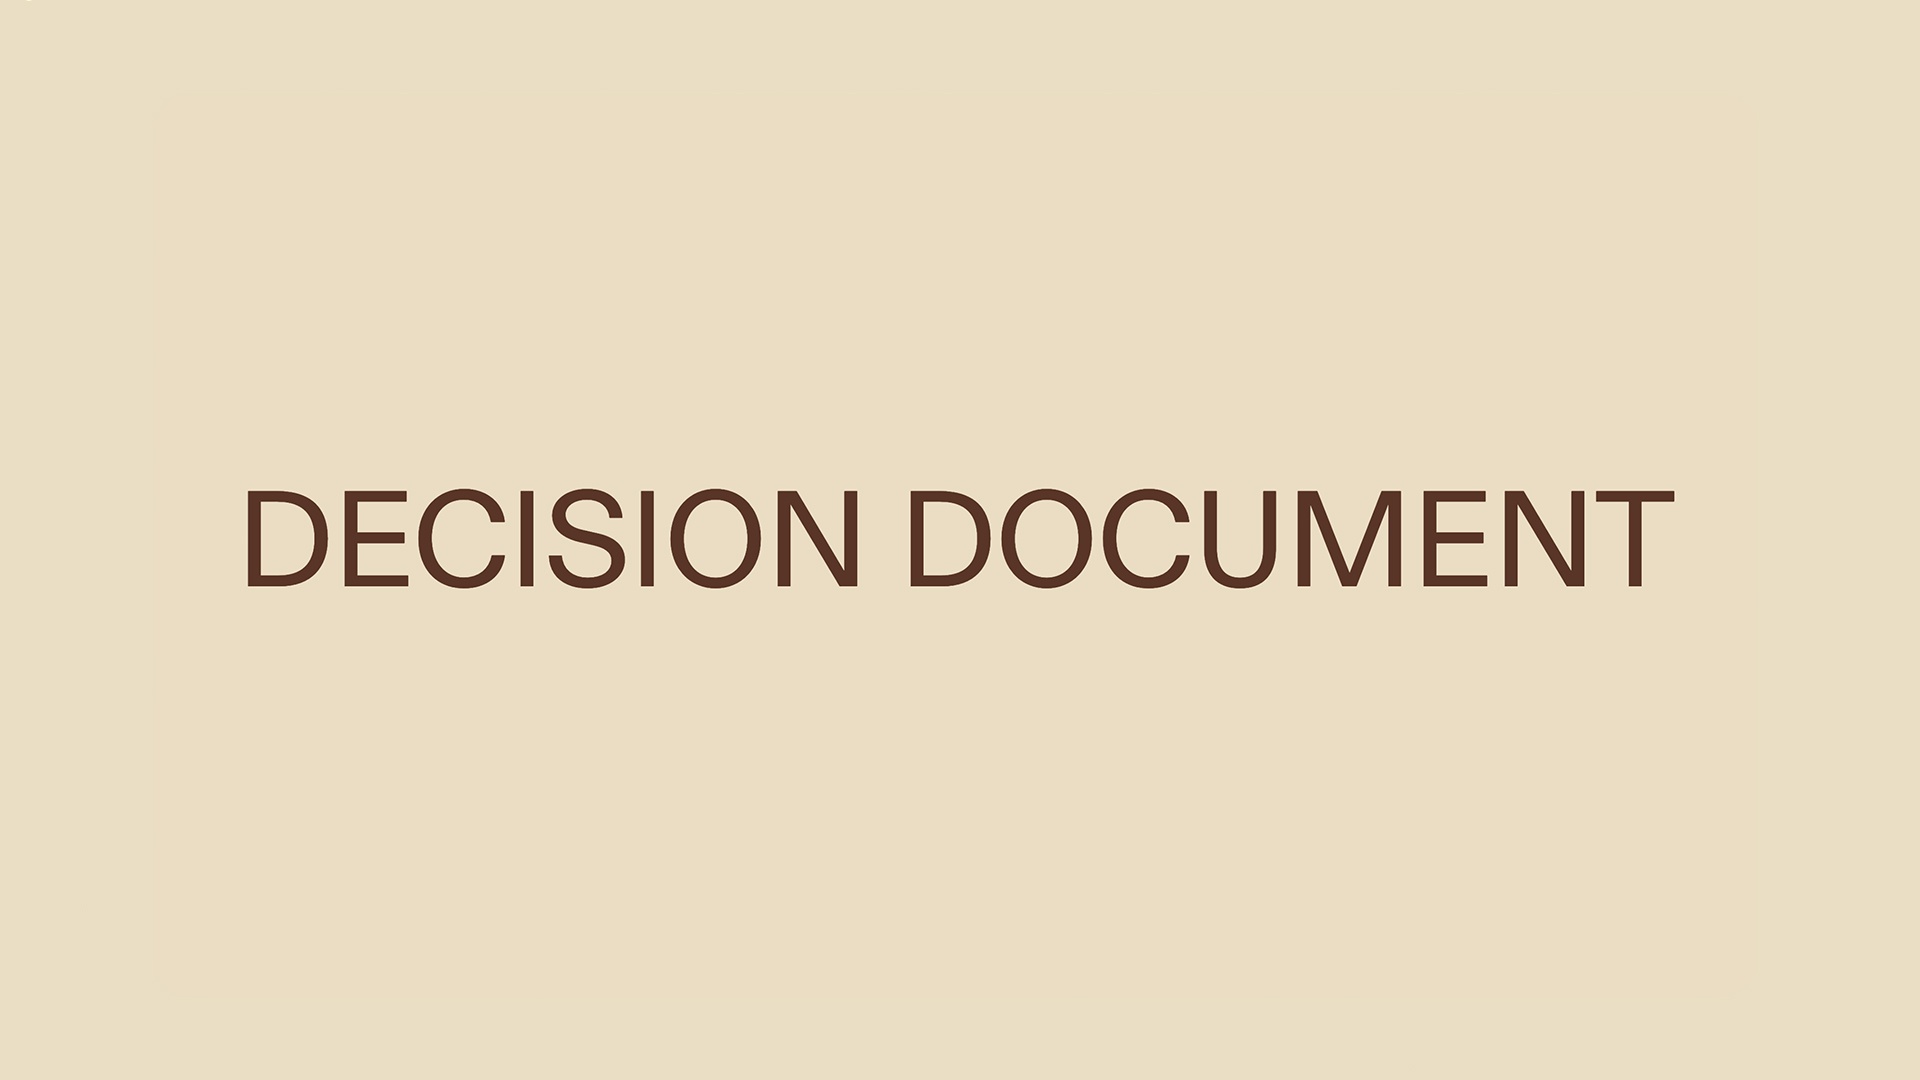 Decision Document - Title